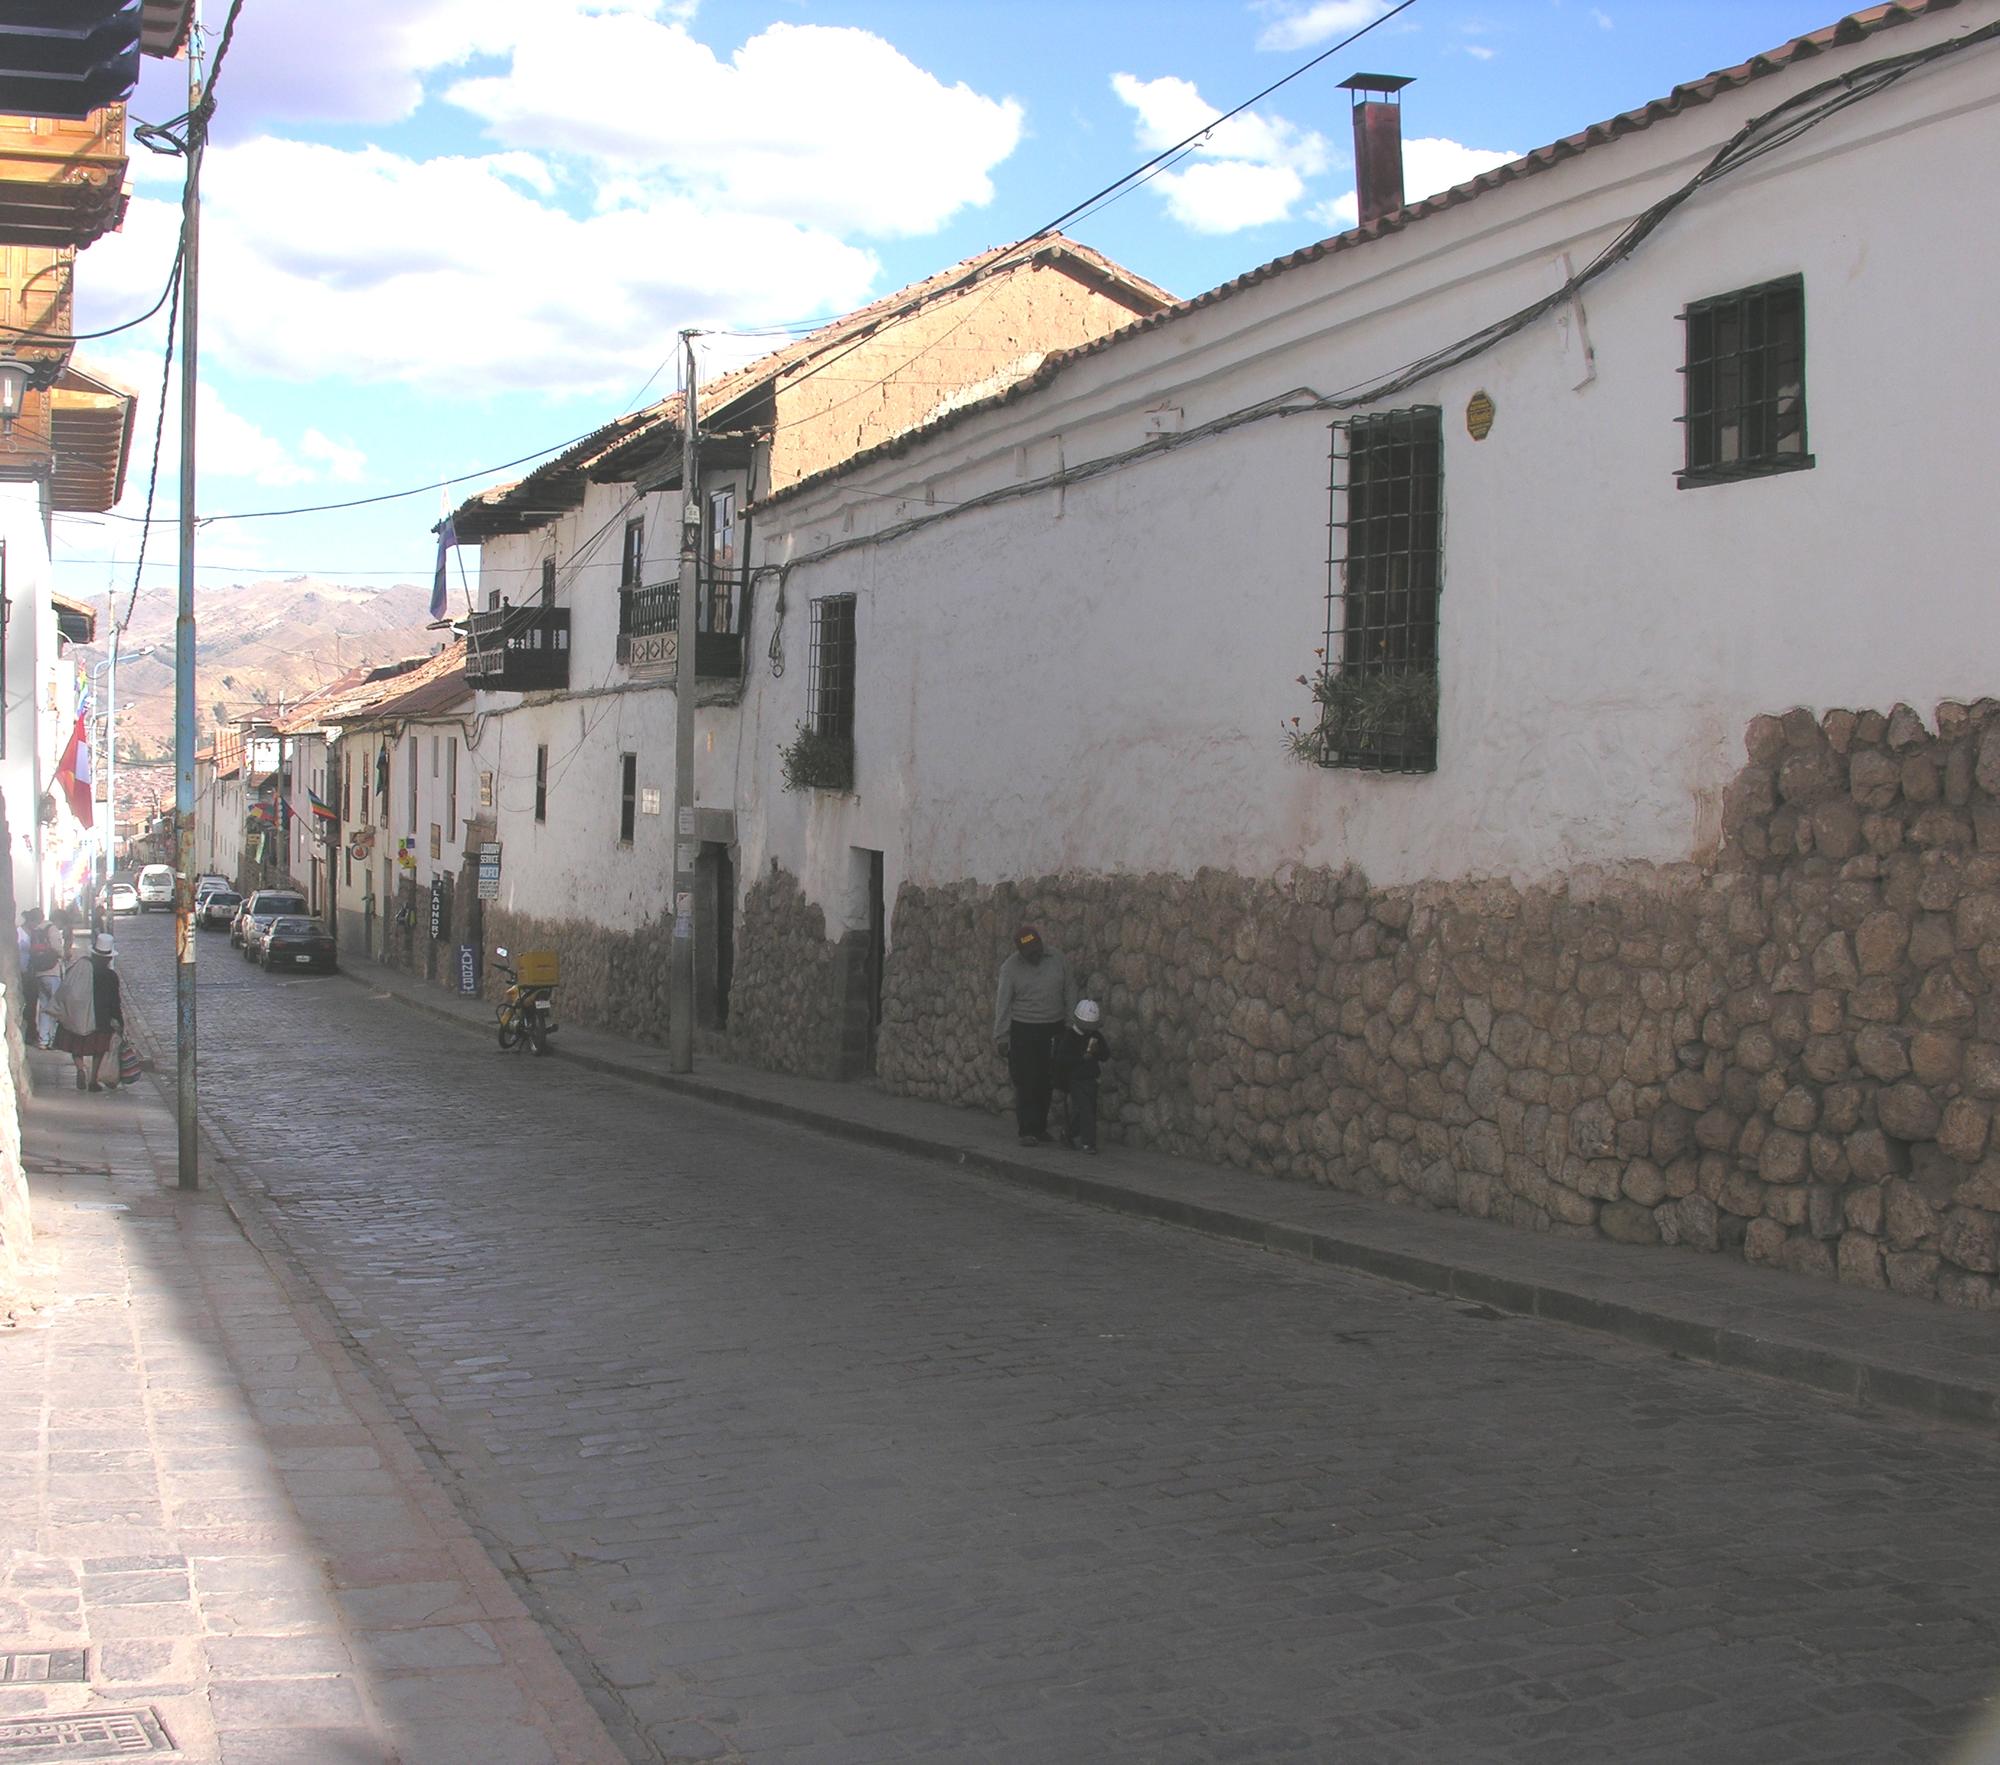 Strasse mit kolonialer Architektur, Cuzco